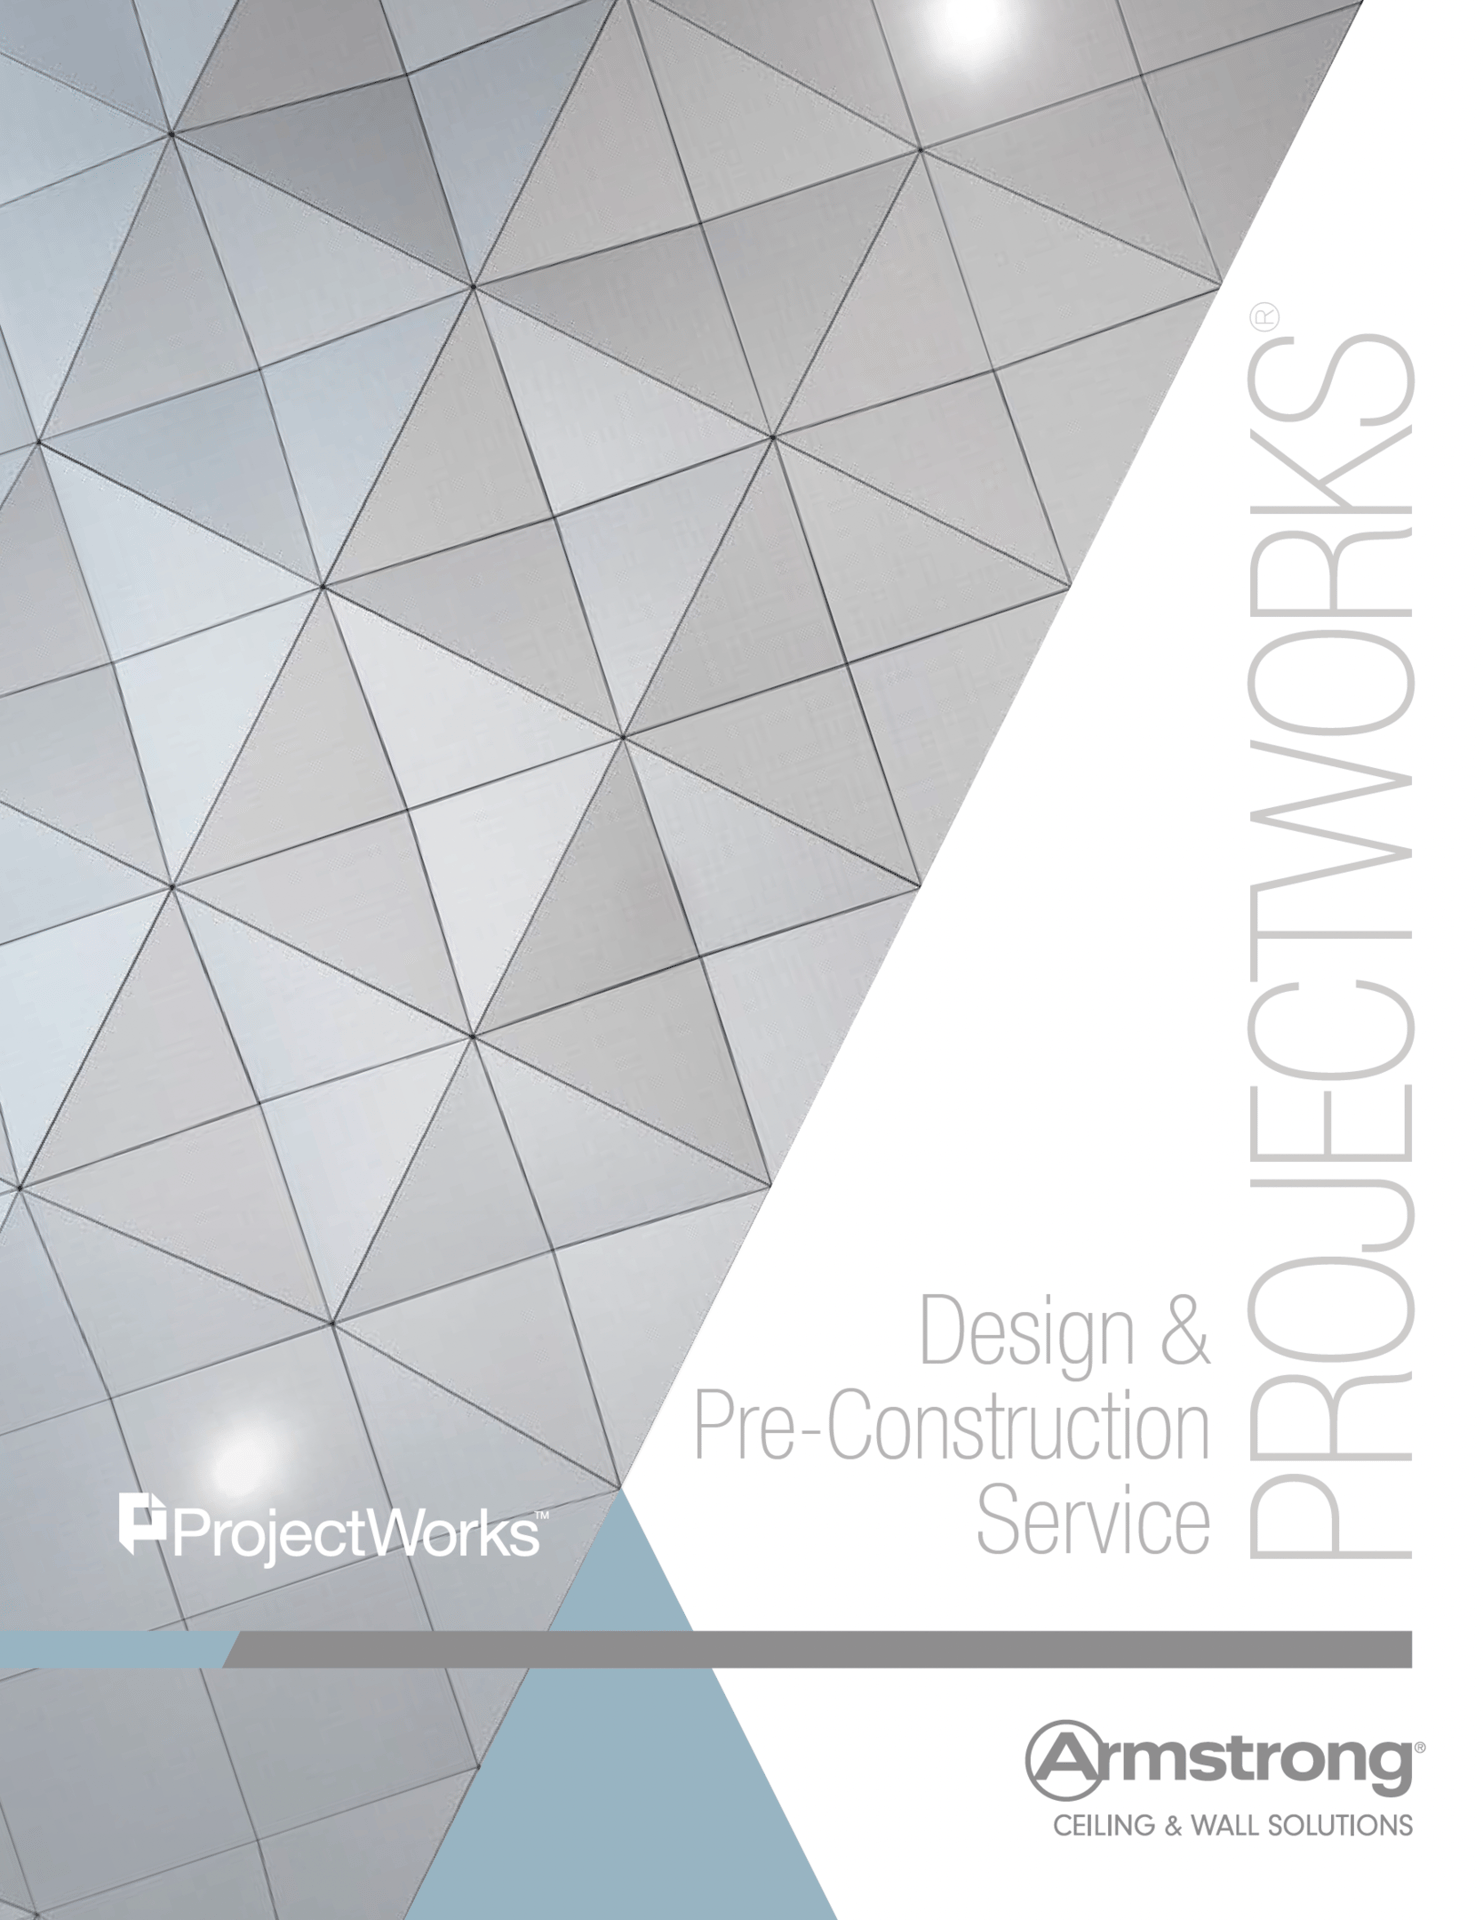 Screenshot of ProjectWorks brochure